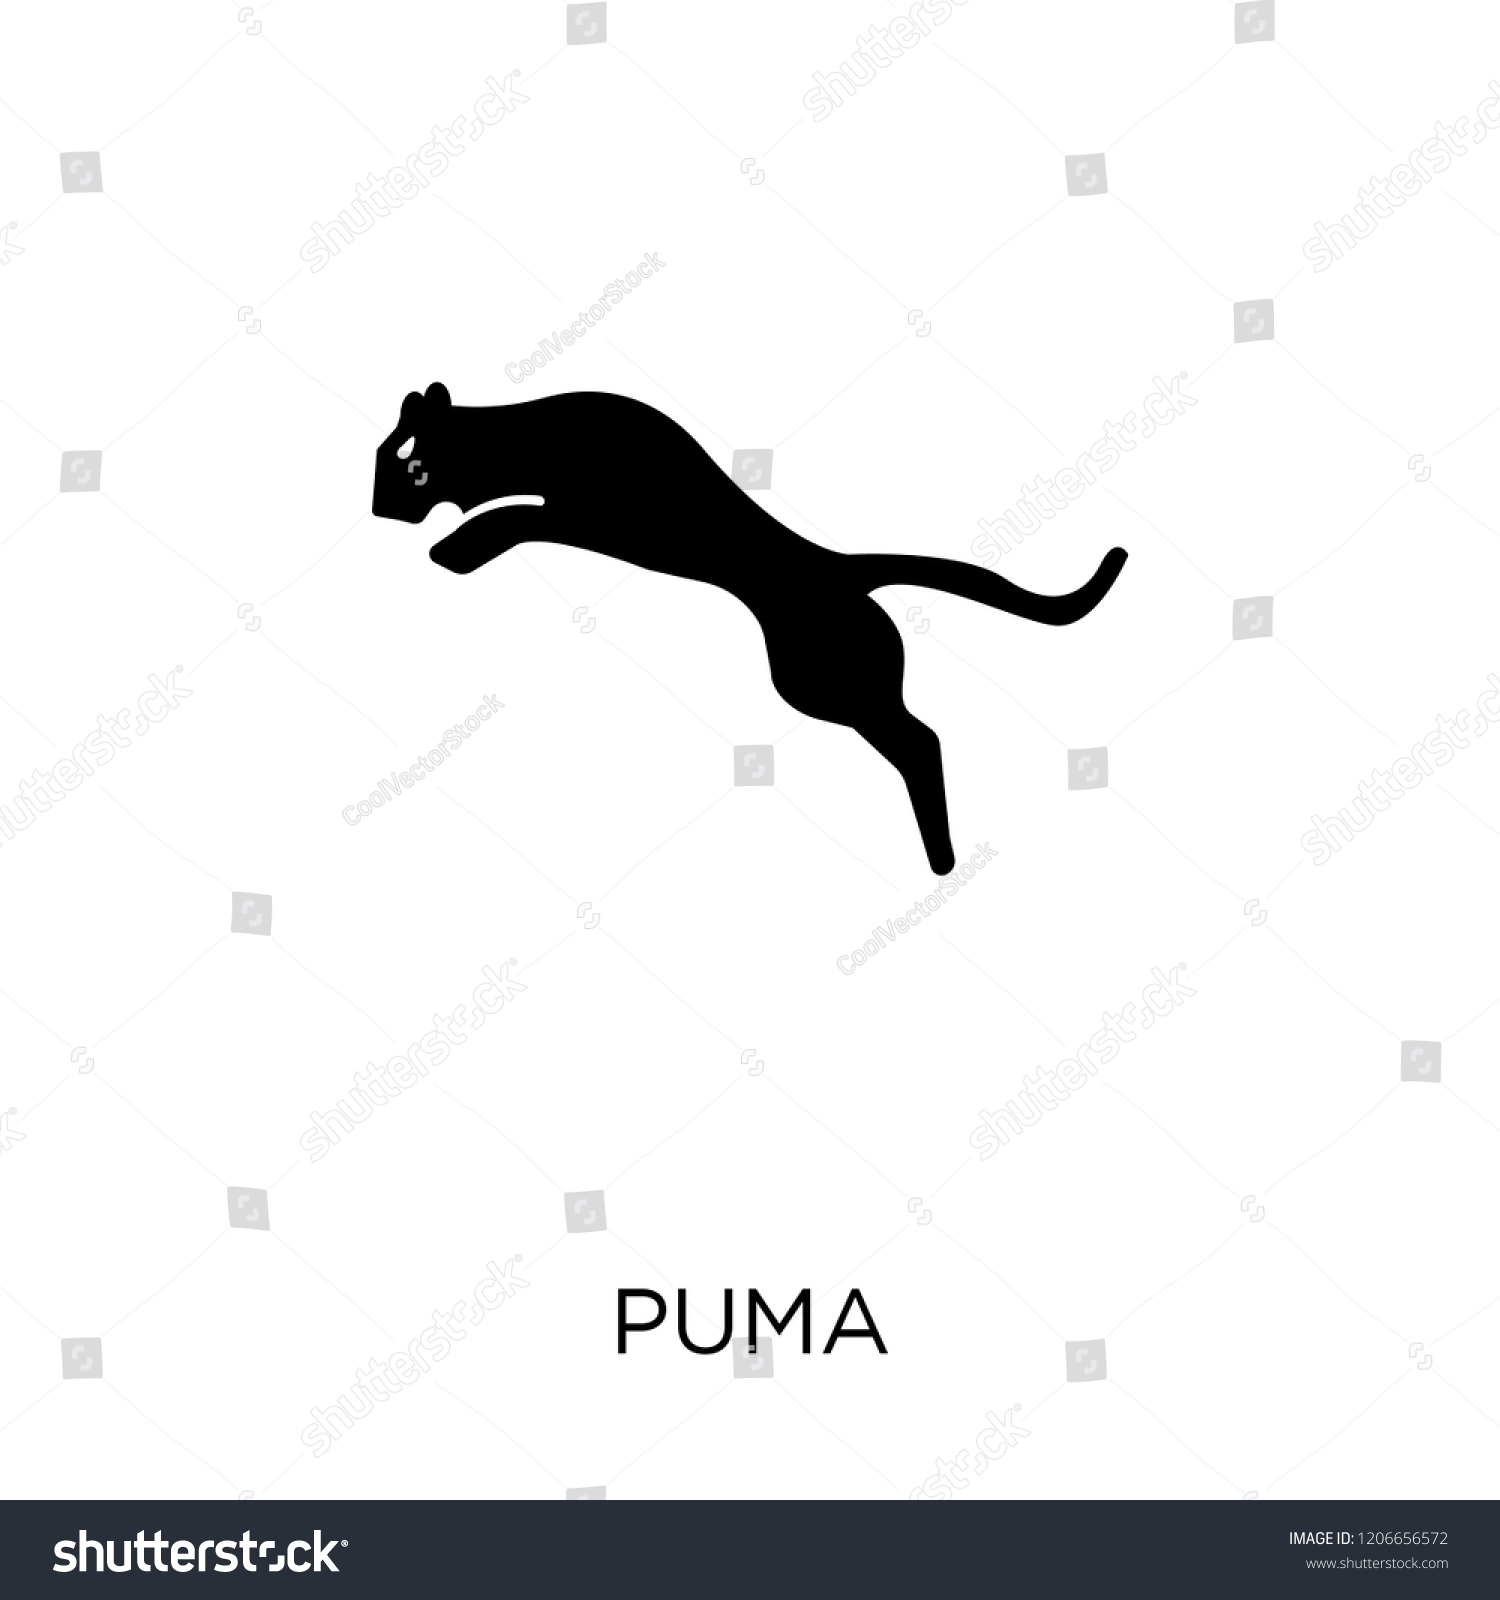 stock symbol for puma